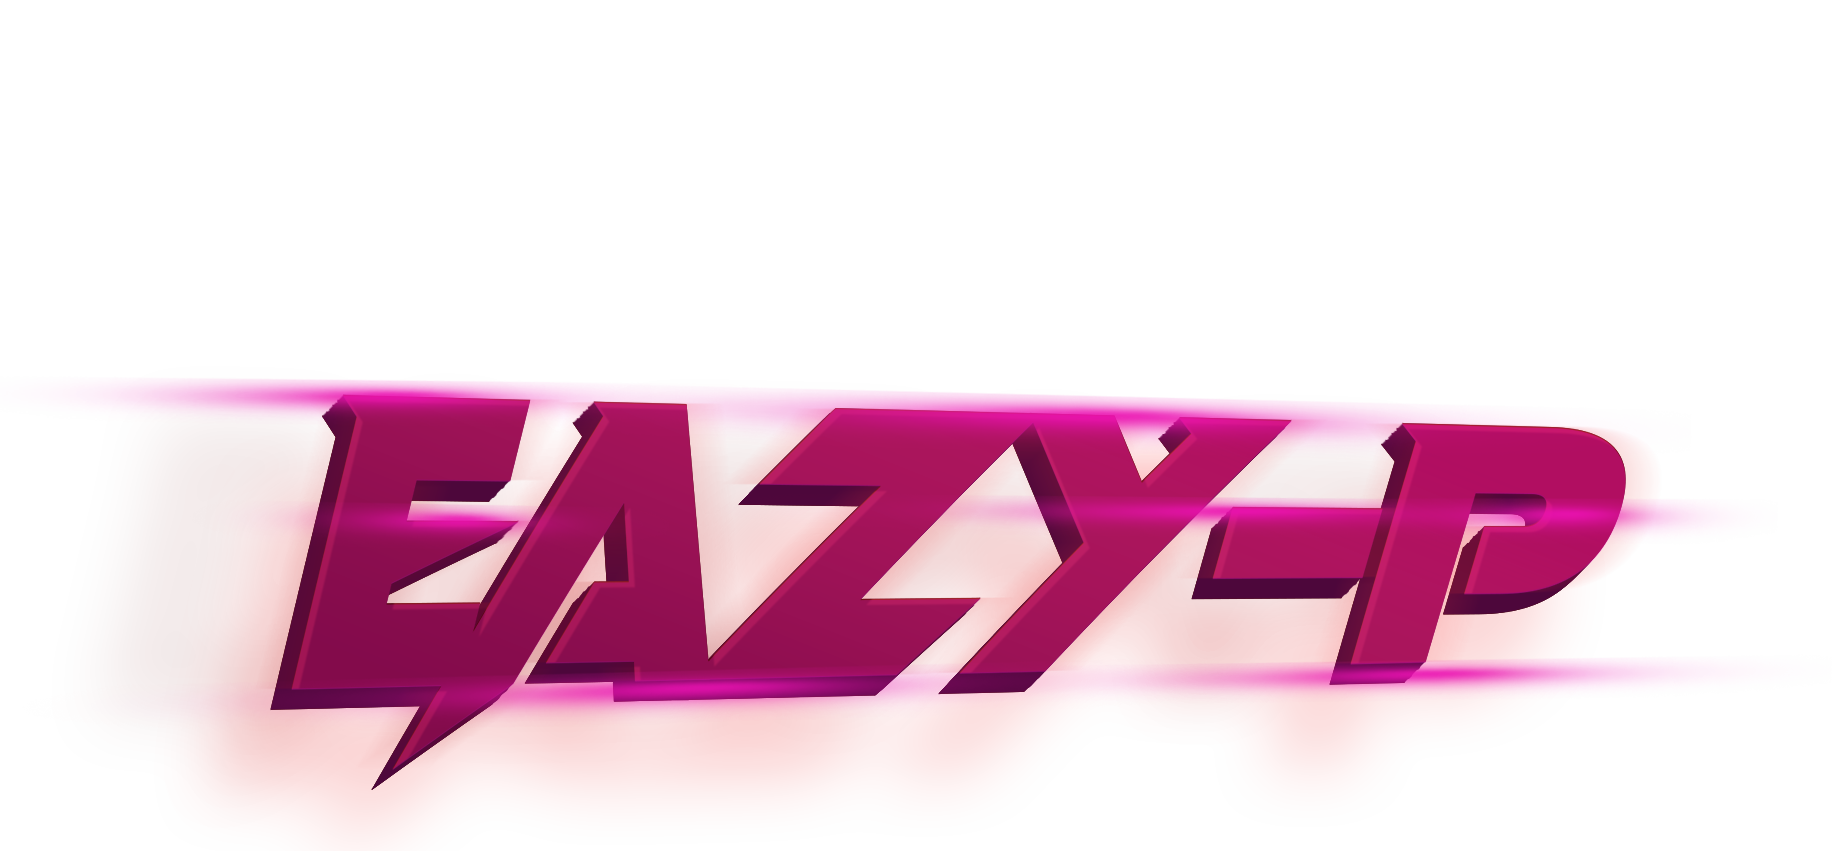 DJ Eazy-P